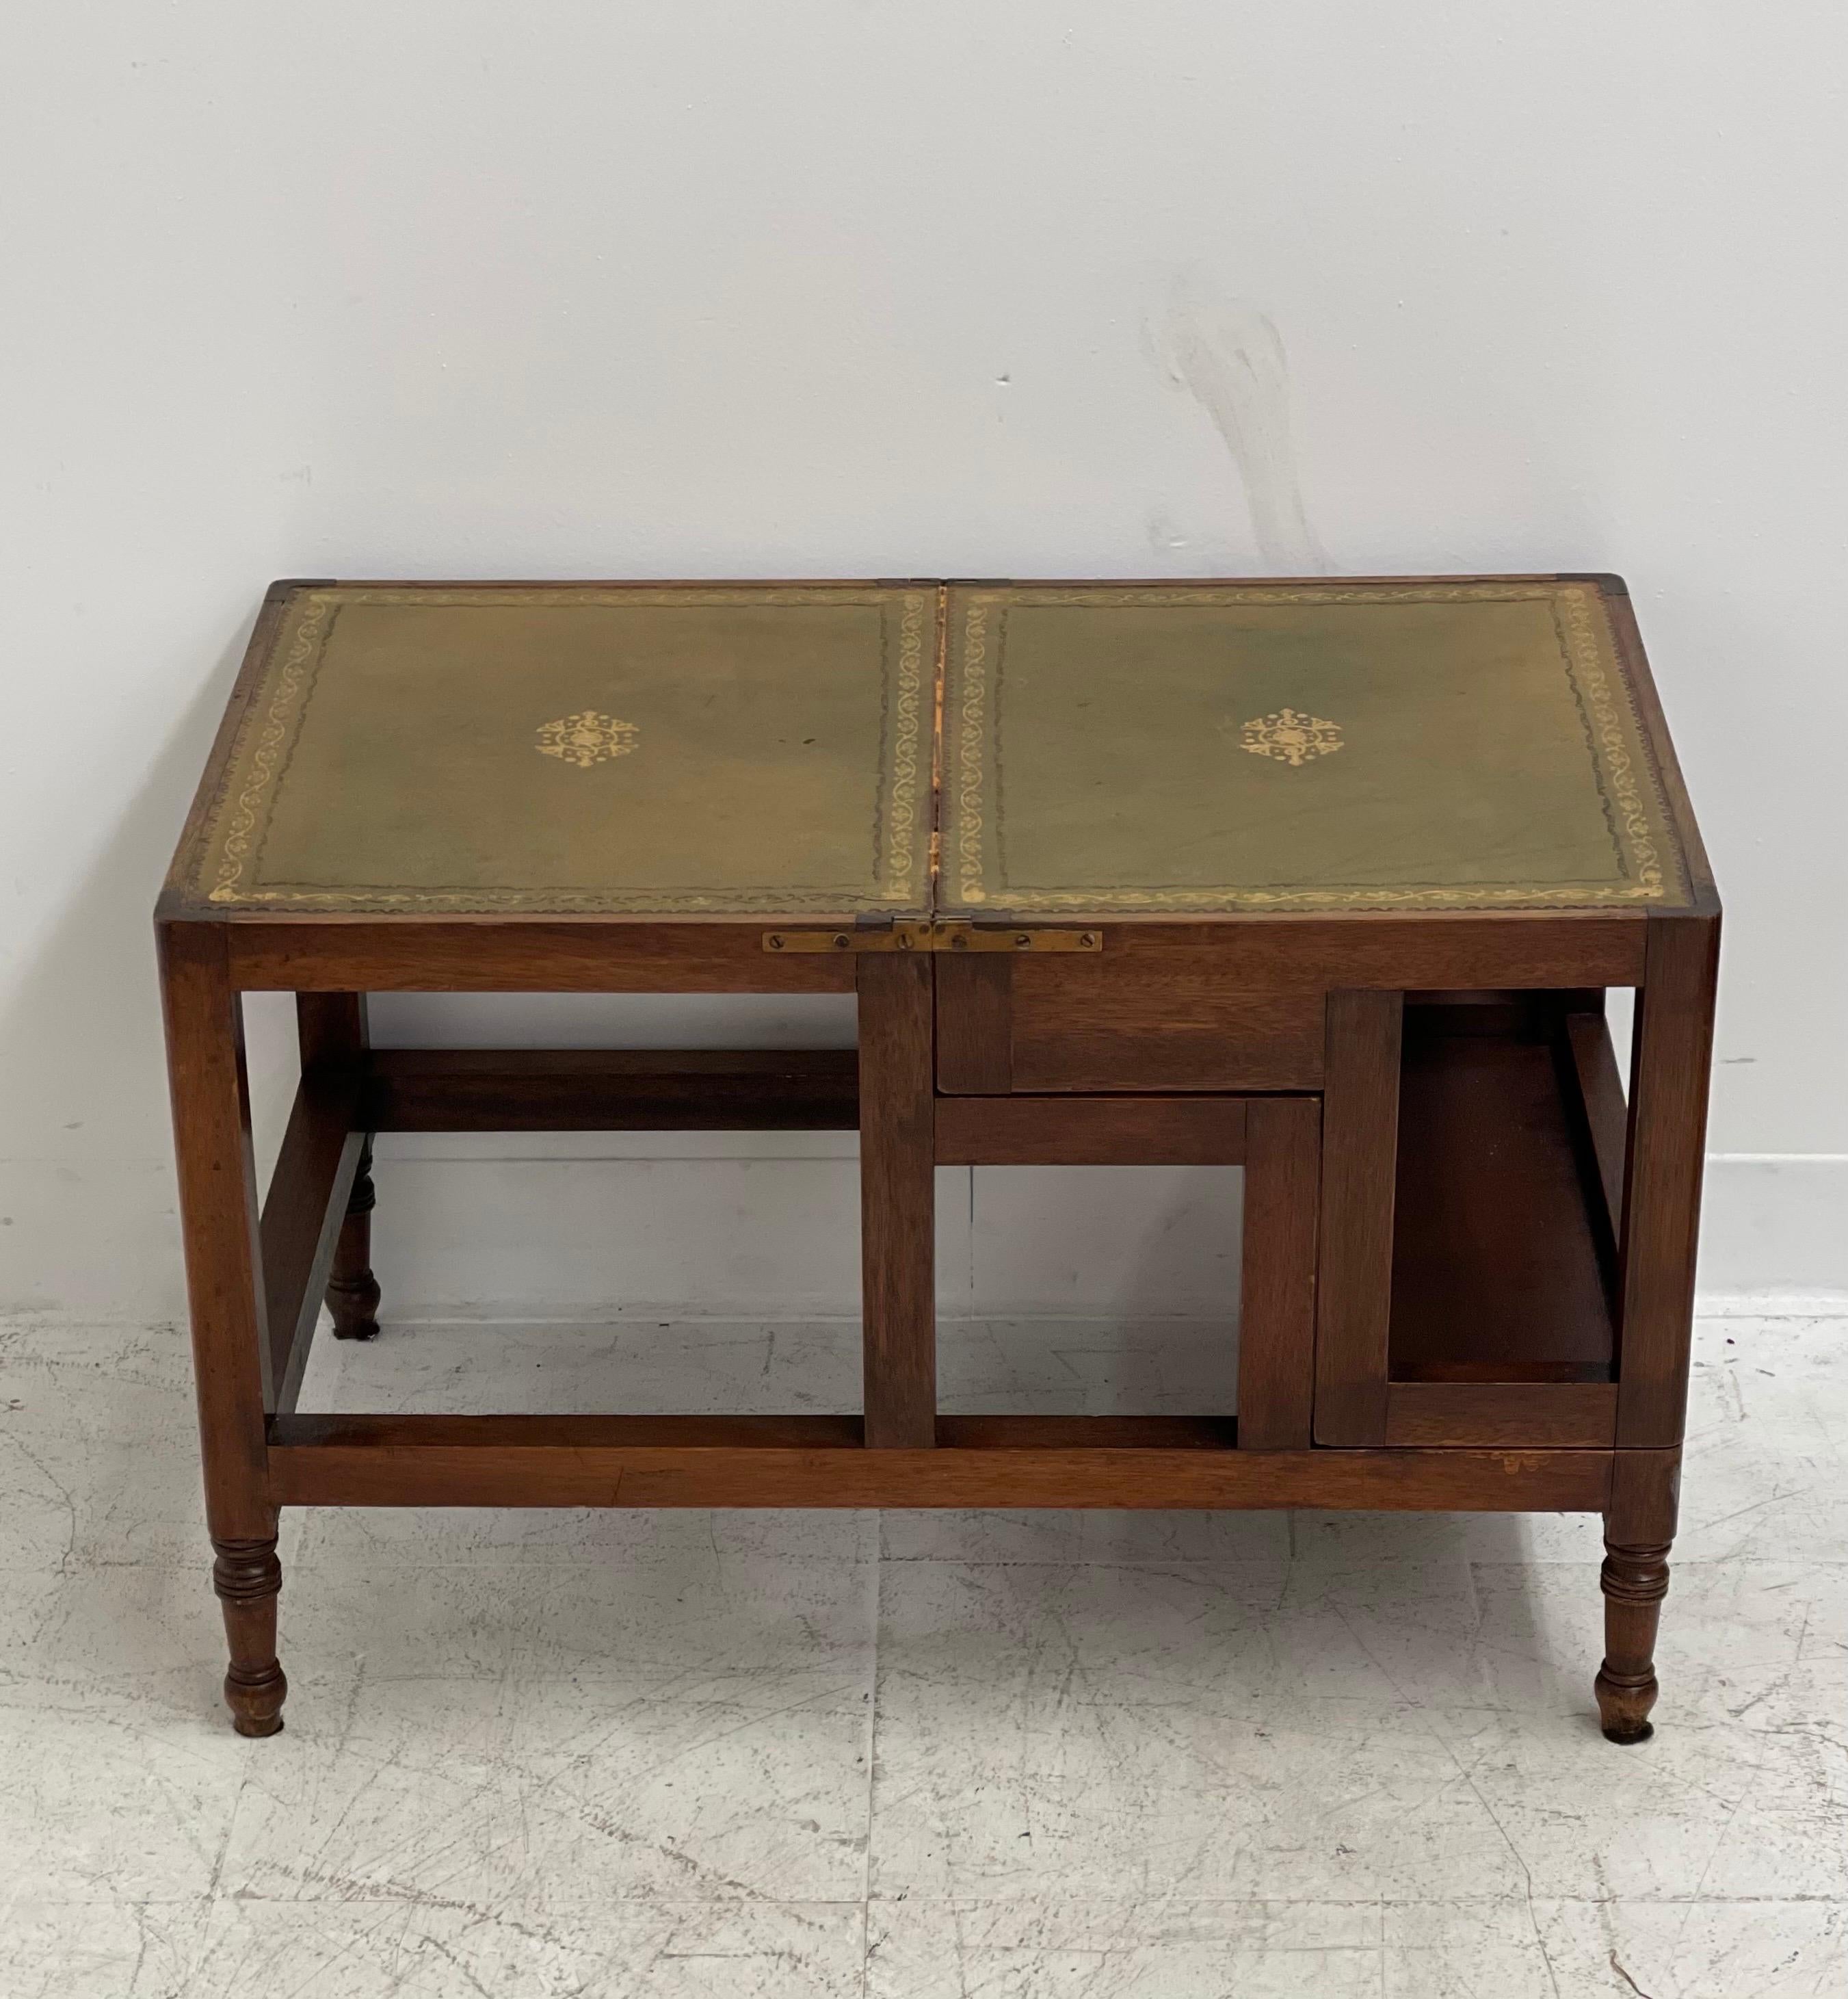 Table basse de bibliothèque métamorphique en acajou de design George III, à quatre marches, avec un plateau décoratif en cuir incisé doré naturellement vieilli et des marches en cuir s'ouvrant pour former une échelle de